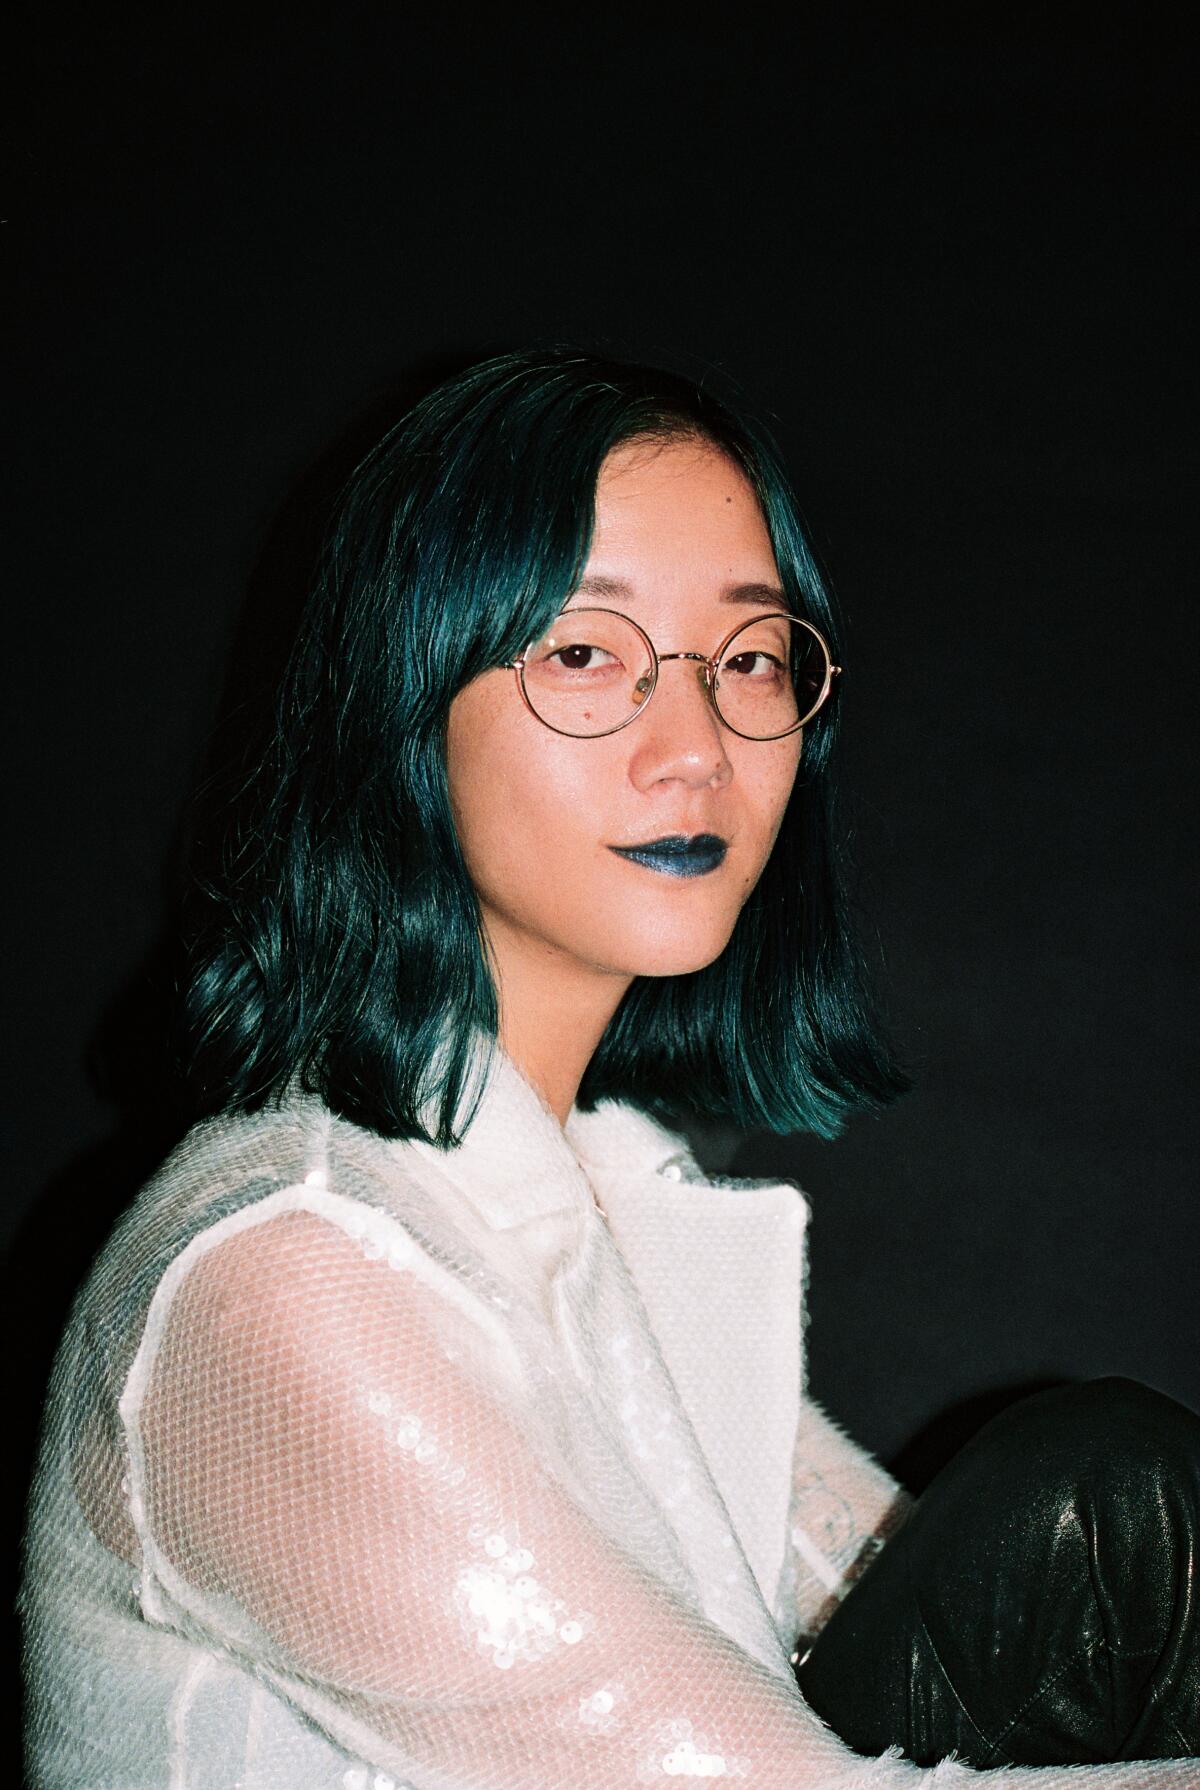 Sound artist Christine Sun Kim